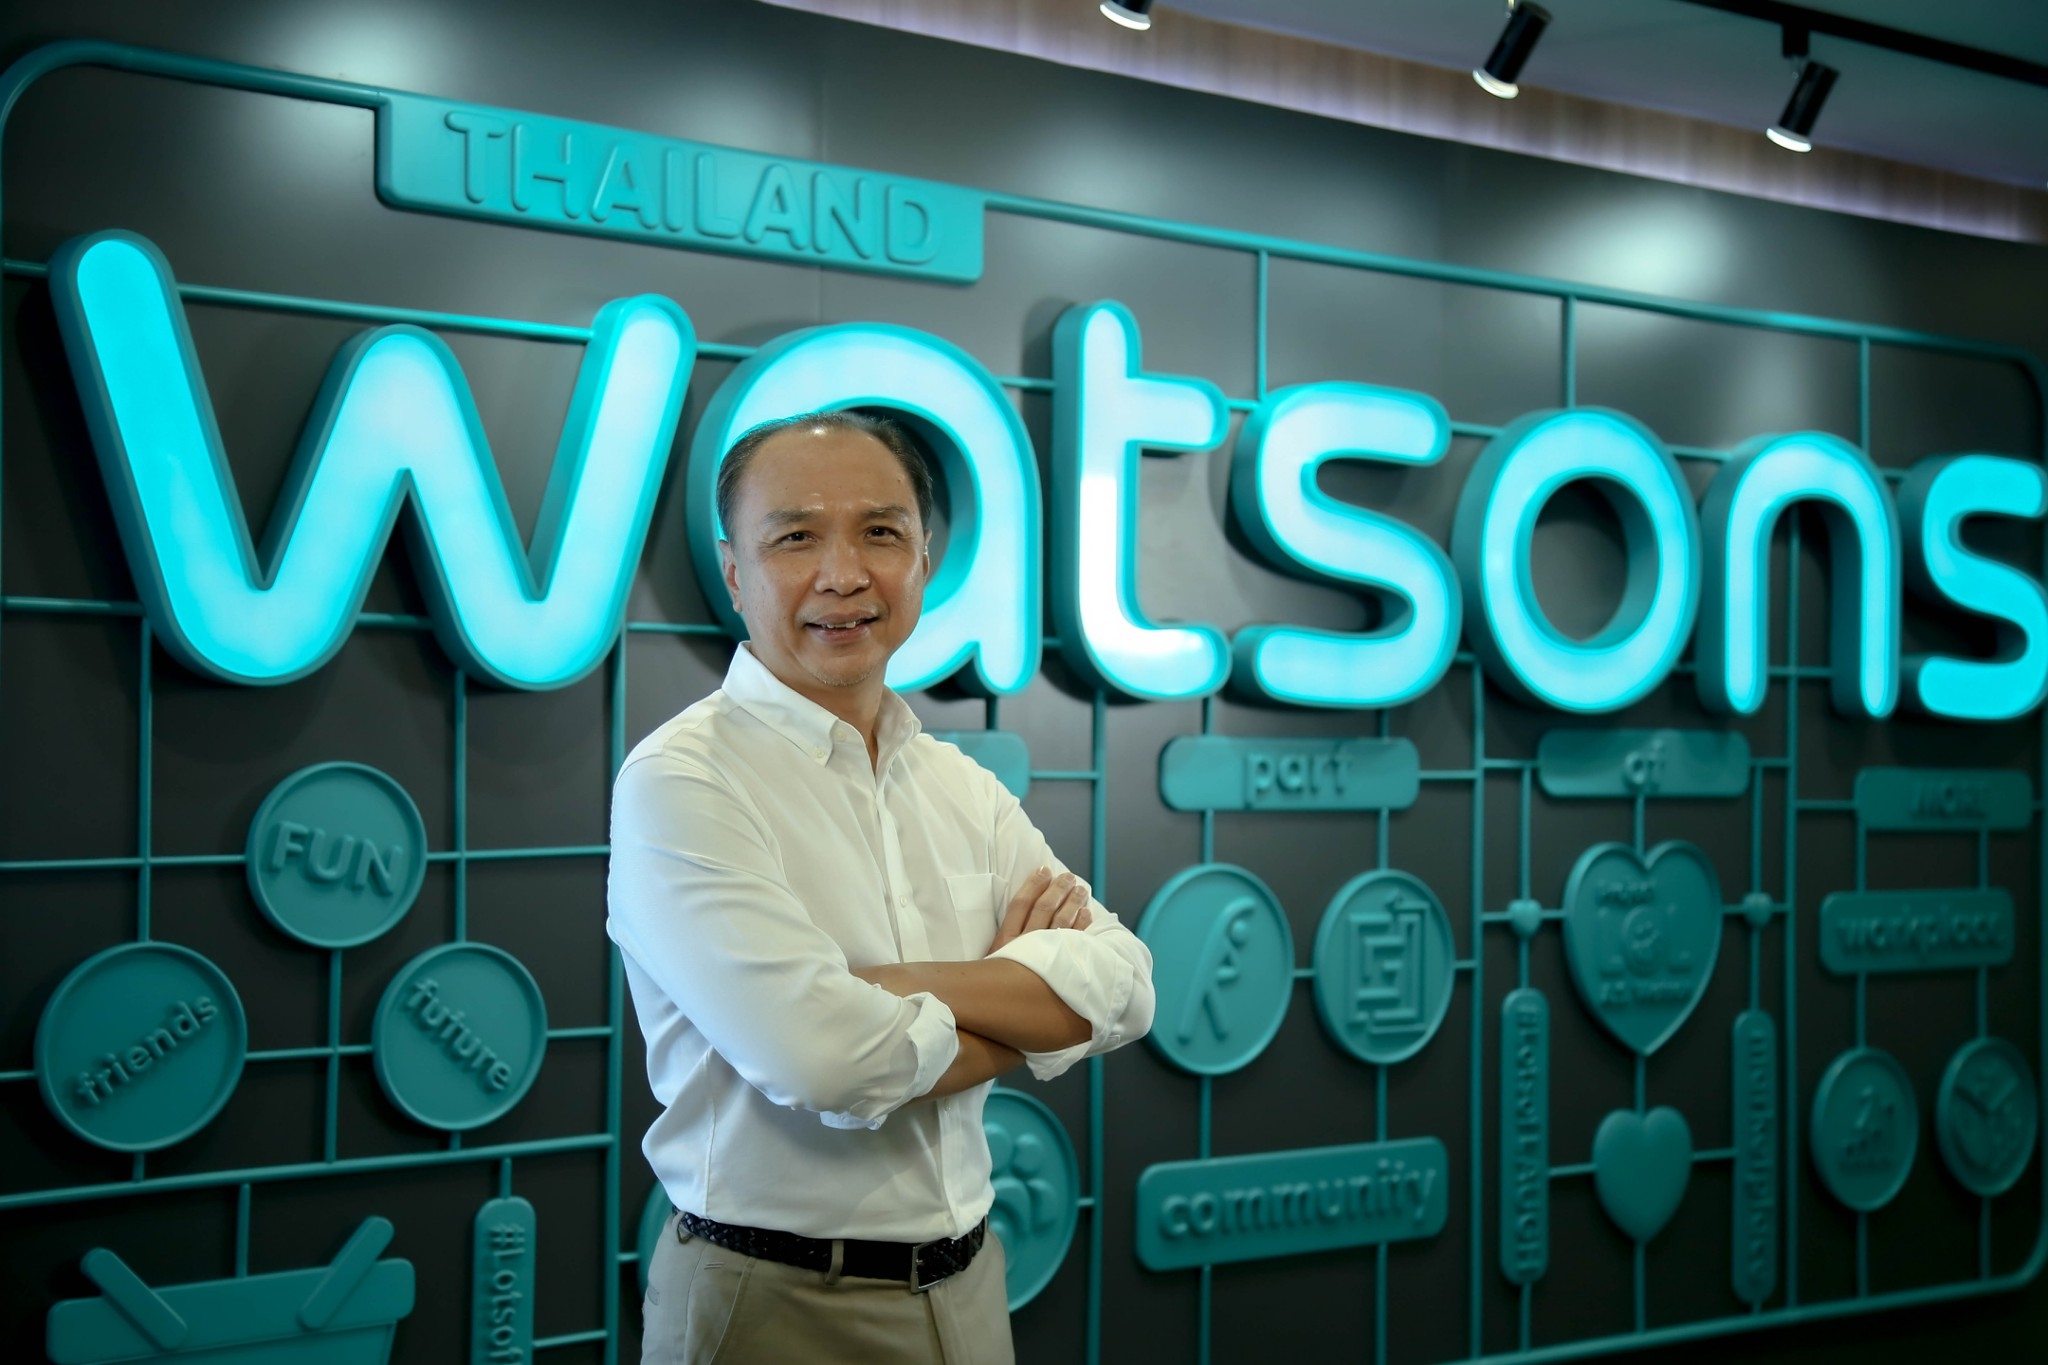 สัมภาษณ์ จิระวัฒน์ แต่งเจนกิจ HR ผู้นำวัฒนธรรม Fun, Friends, Future สู่ Watsons Thailand ทางเลือกแรกของคนหางานด้านความสวยงาม